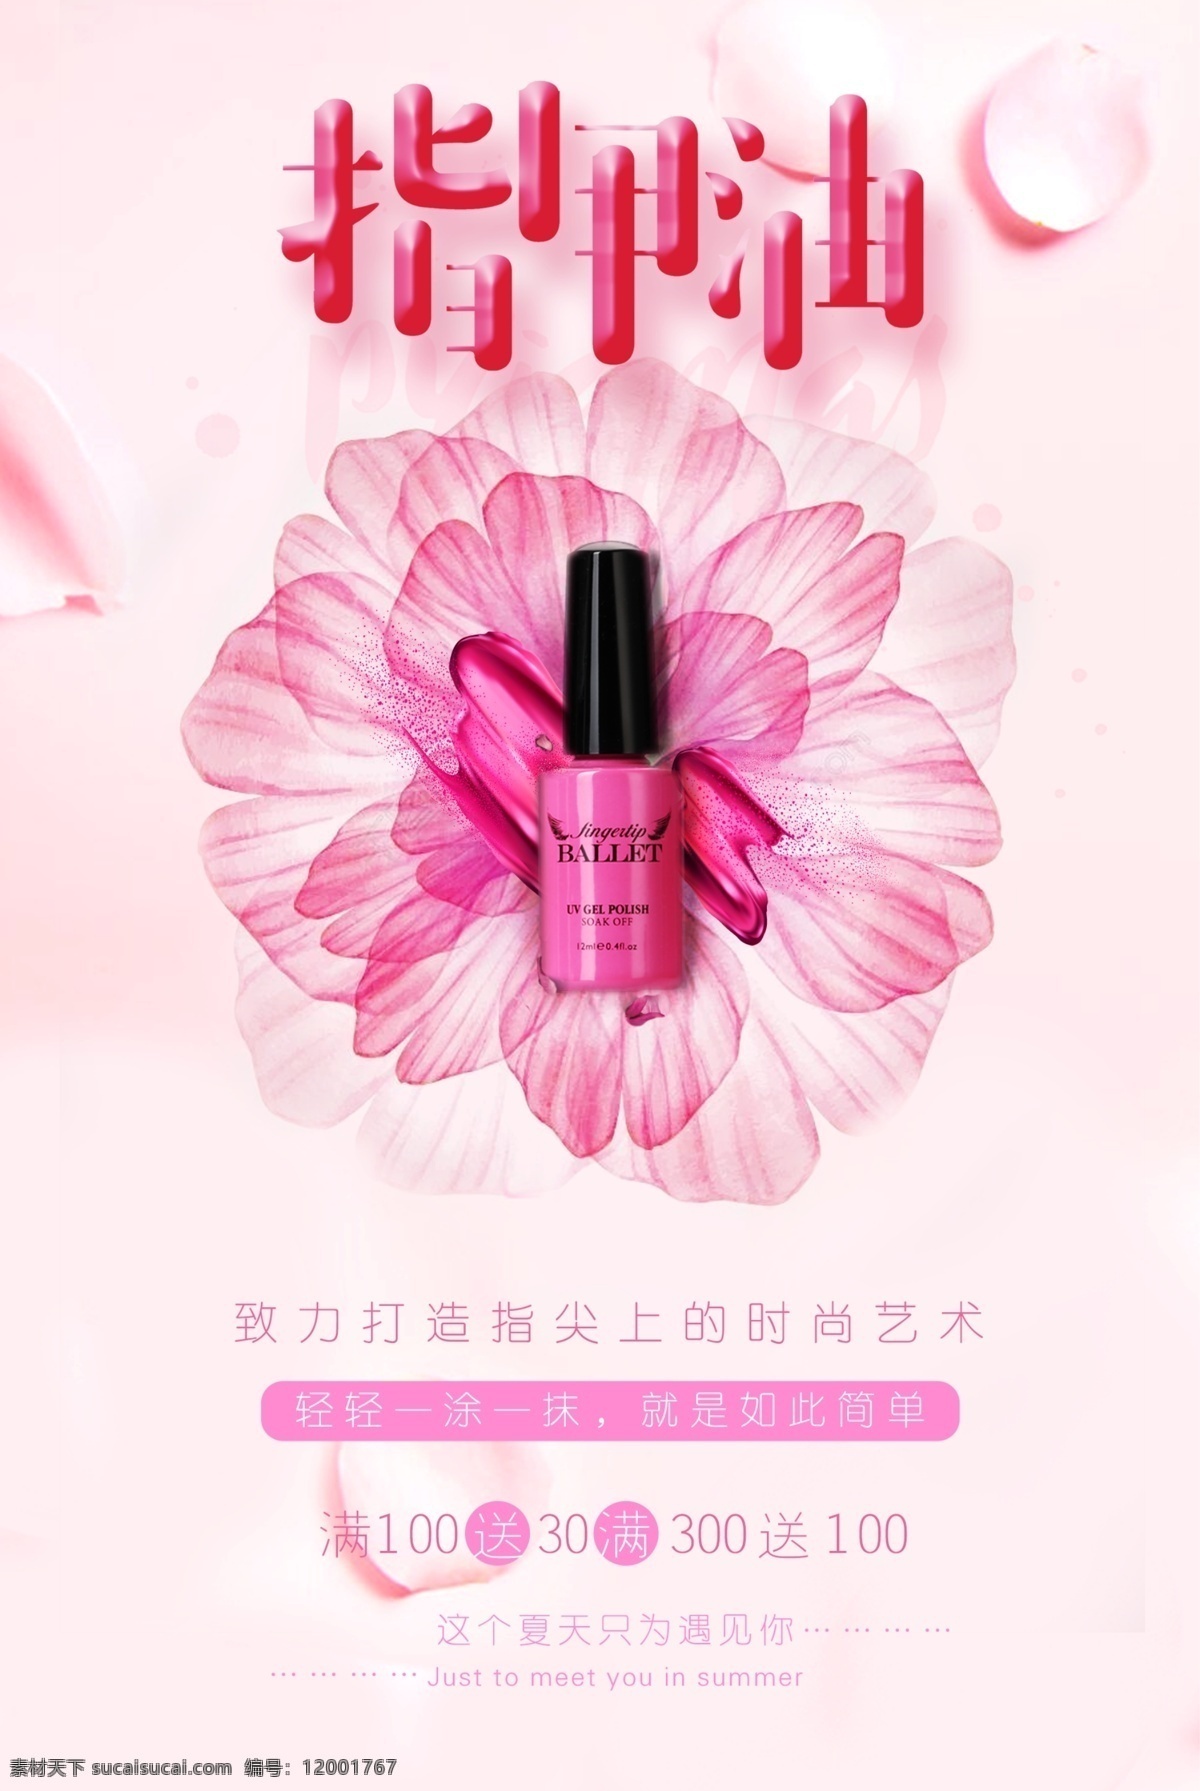 2017 粉红色 指甲油 美甲 美甲海报设计 花朵 唯美